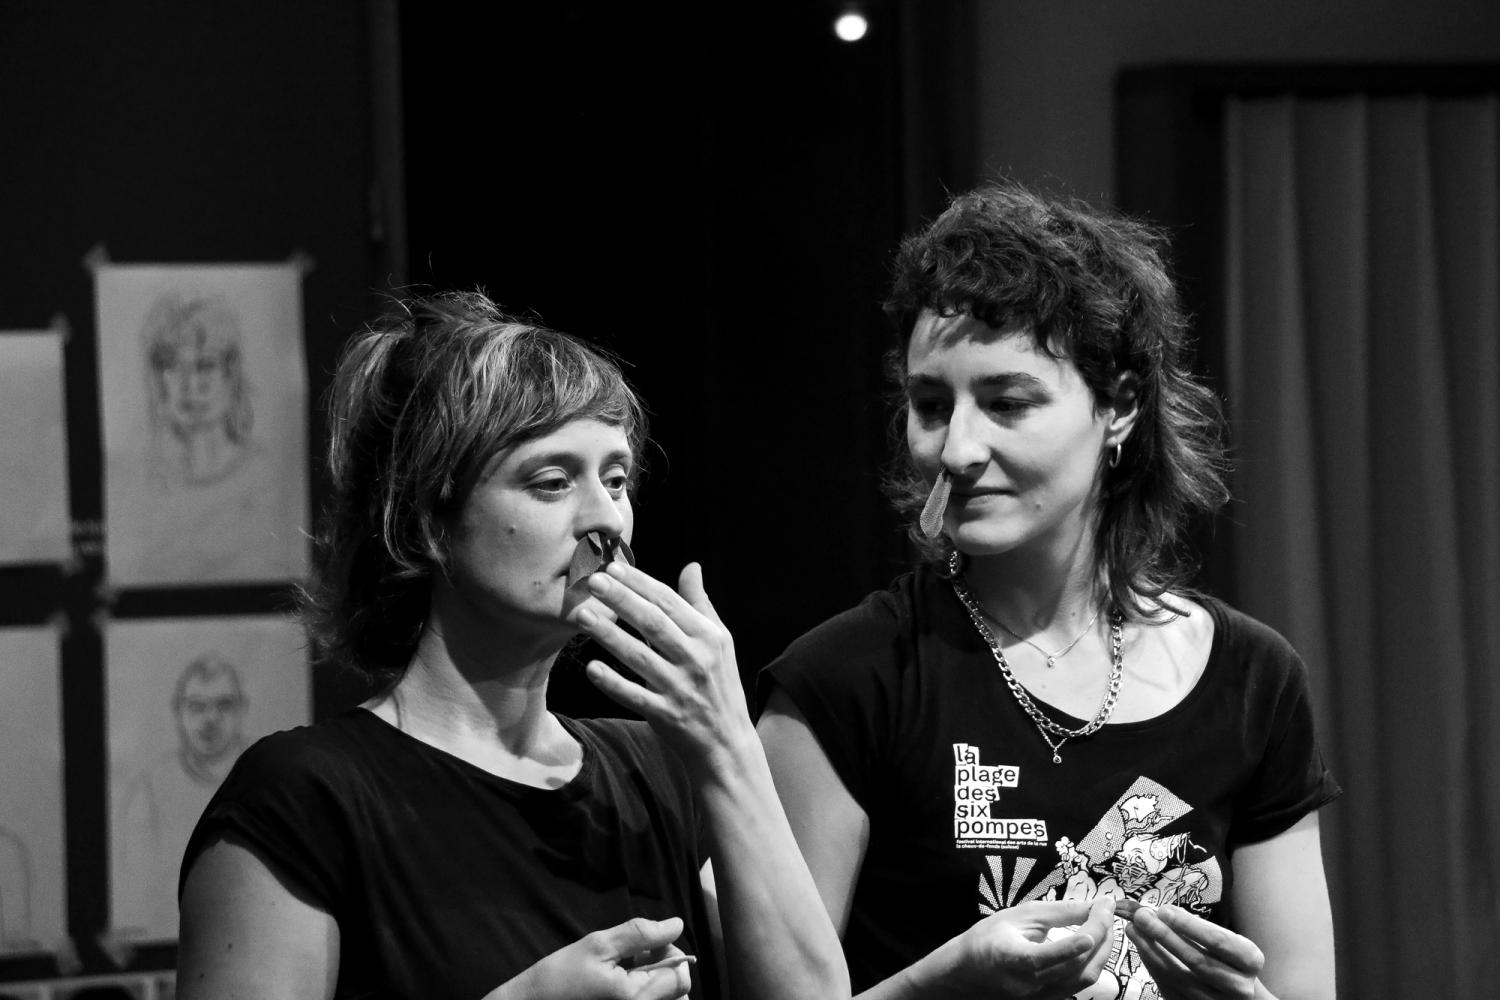 Eine Schwarz-Weiss-Fotografie zeigt die Oberkörper zweier weiblich gelesener Personen, in deren Nasenlöchern Salbei steckt.